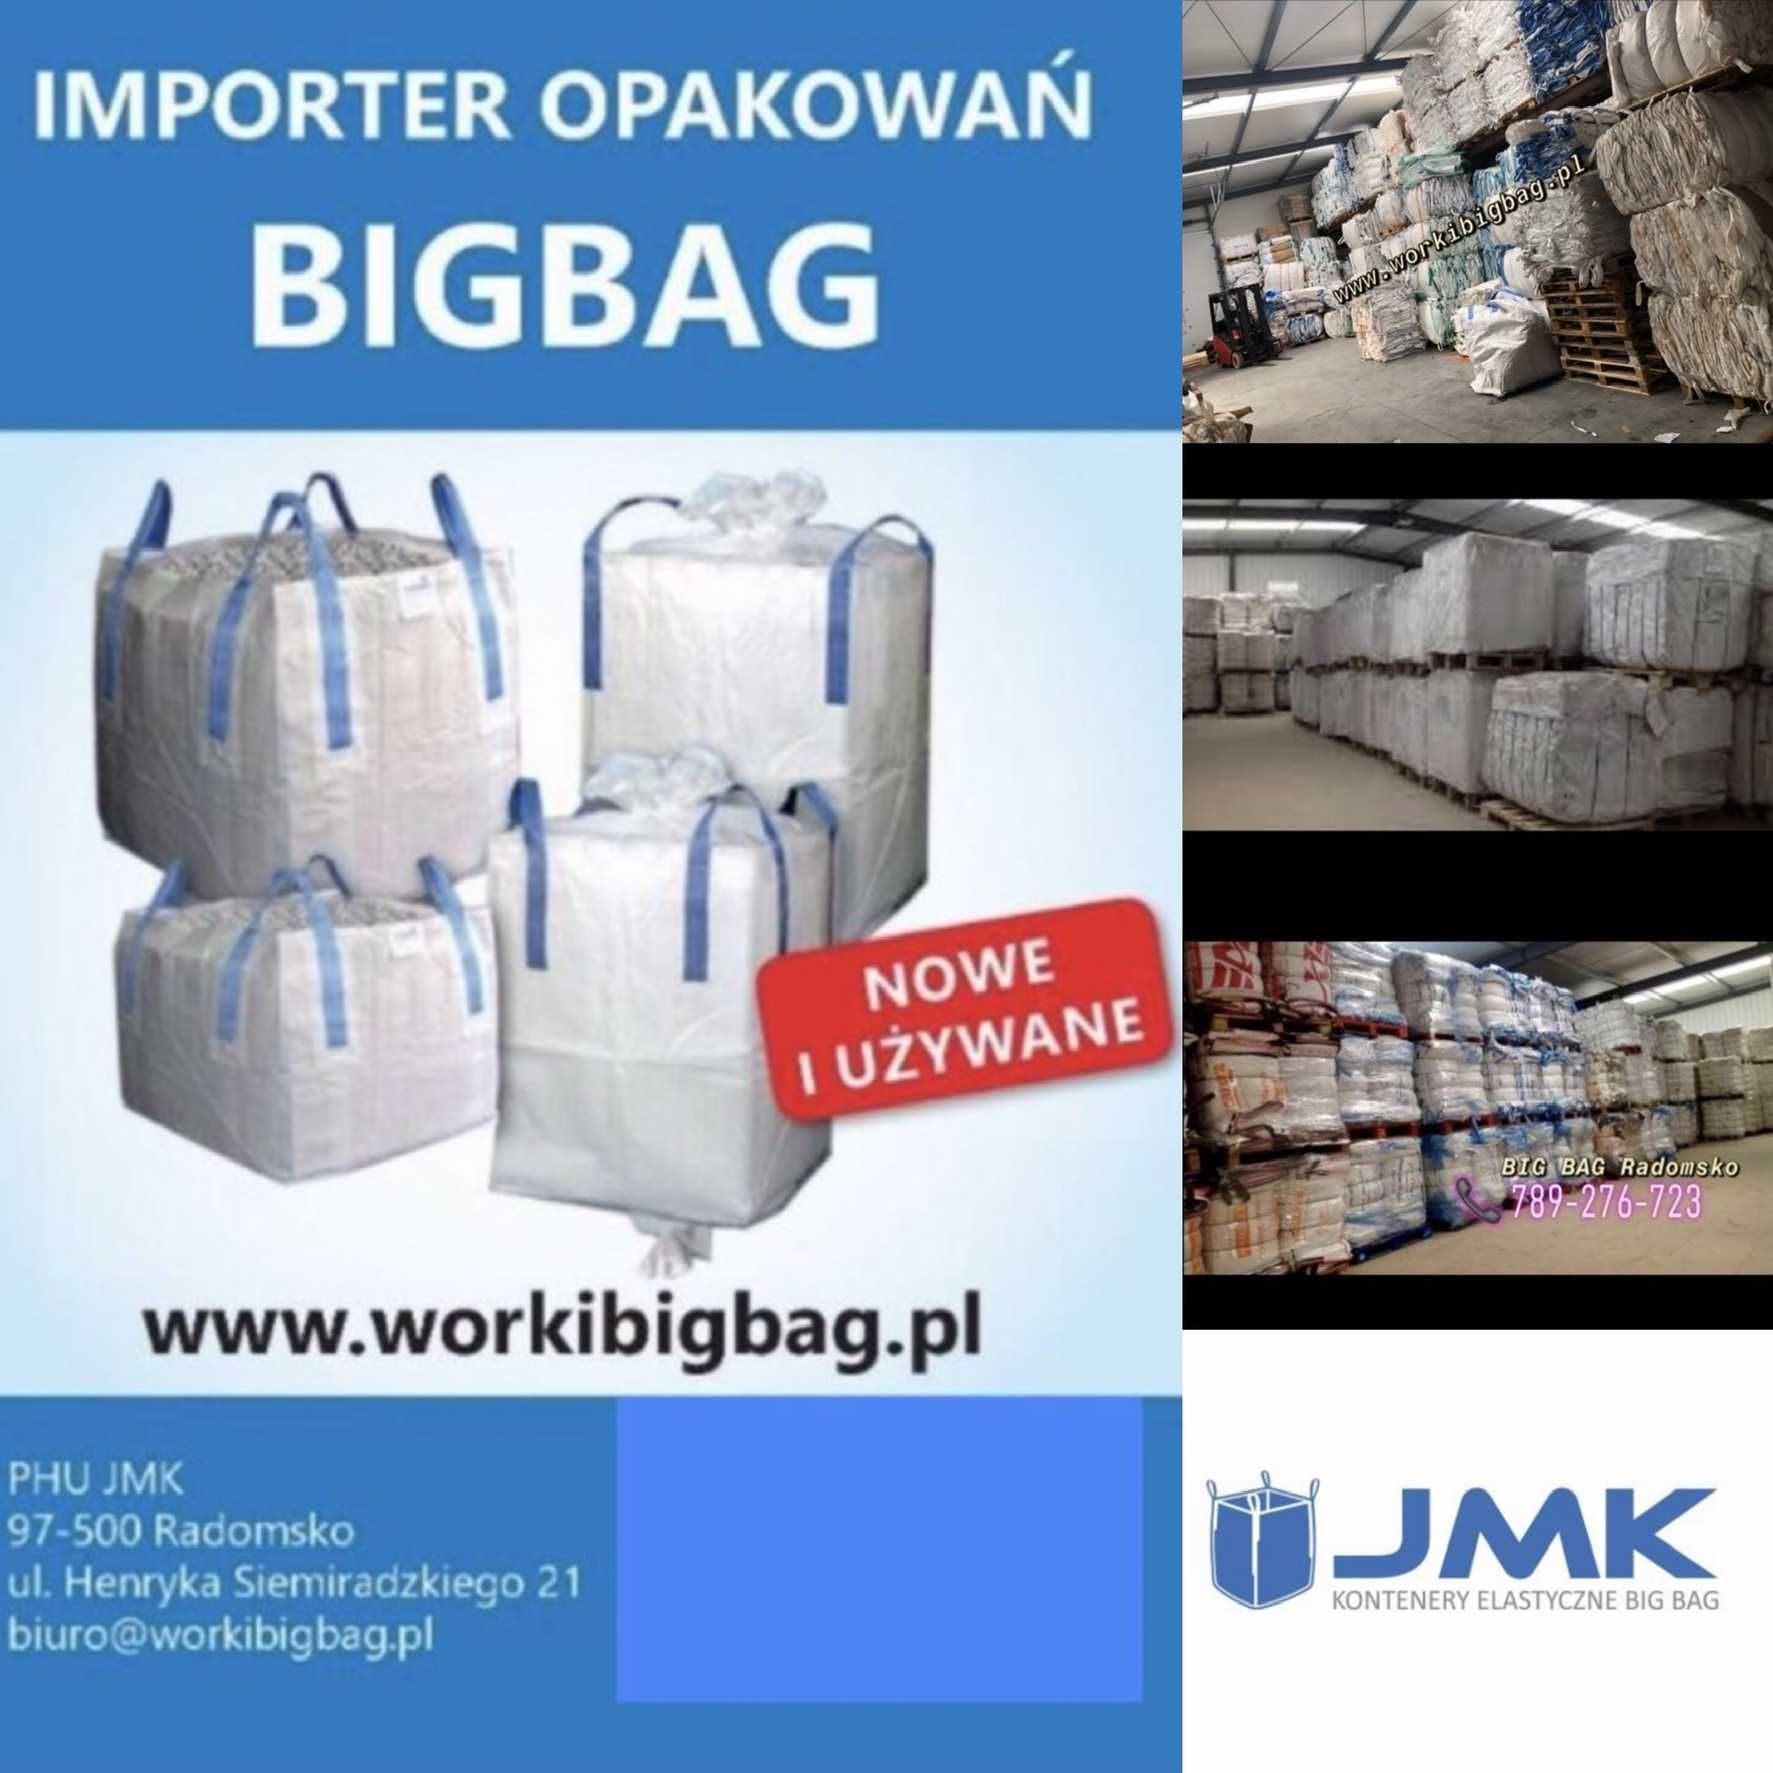 Worki Big Bag NOWE 120/90/91 Big Bag Bagi Szybka Wysyłka Duży Wybór